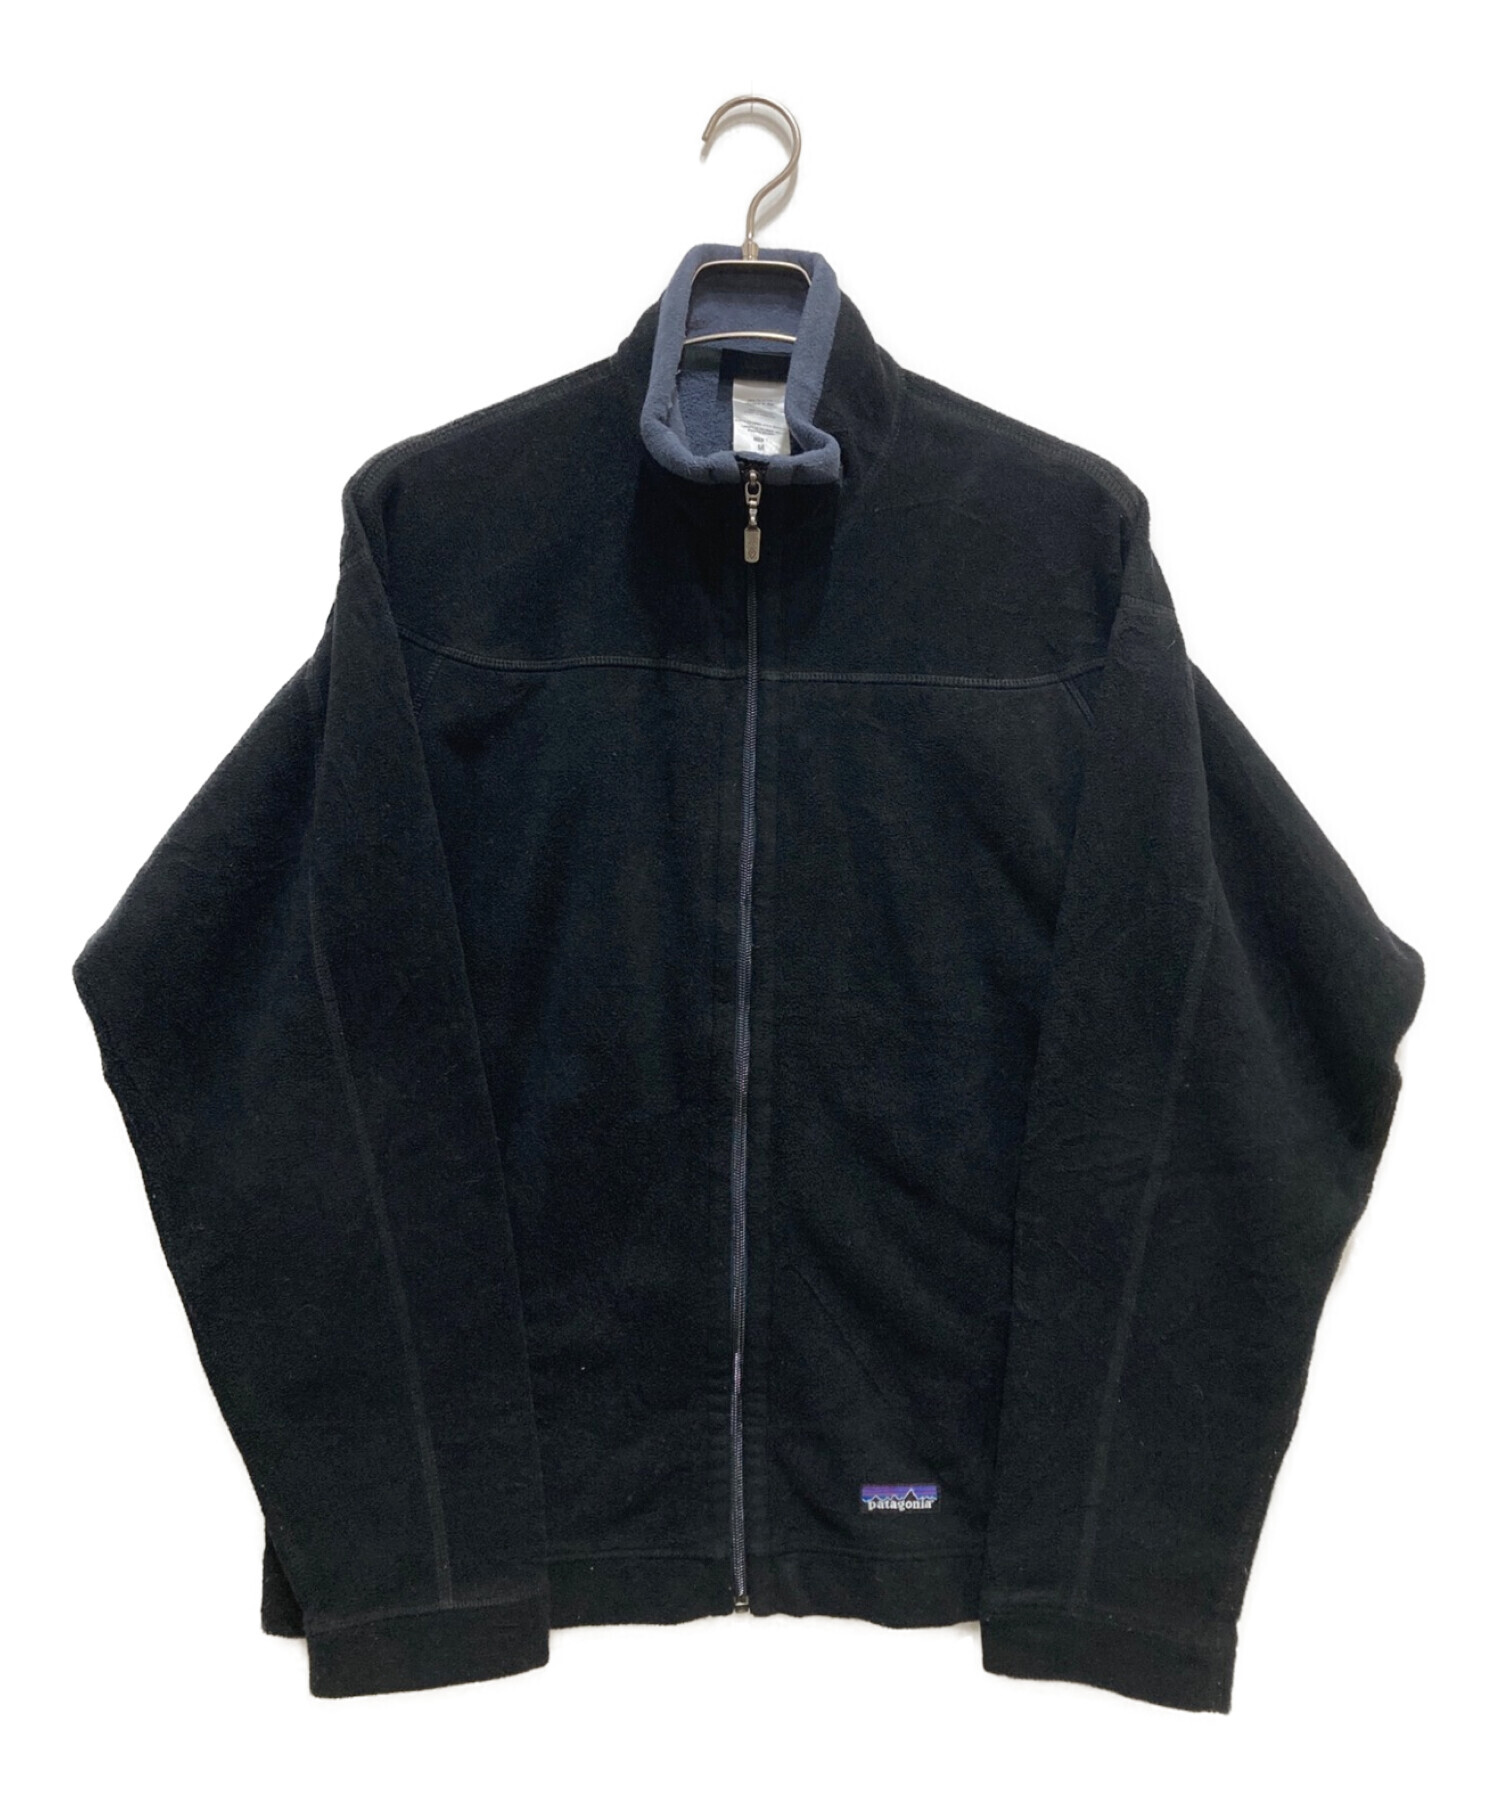 Patagonia SYNCHILLA (パタゴニア シンチラ) フリースジャケット ブラック サイズ:M